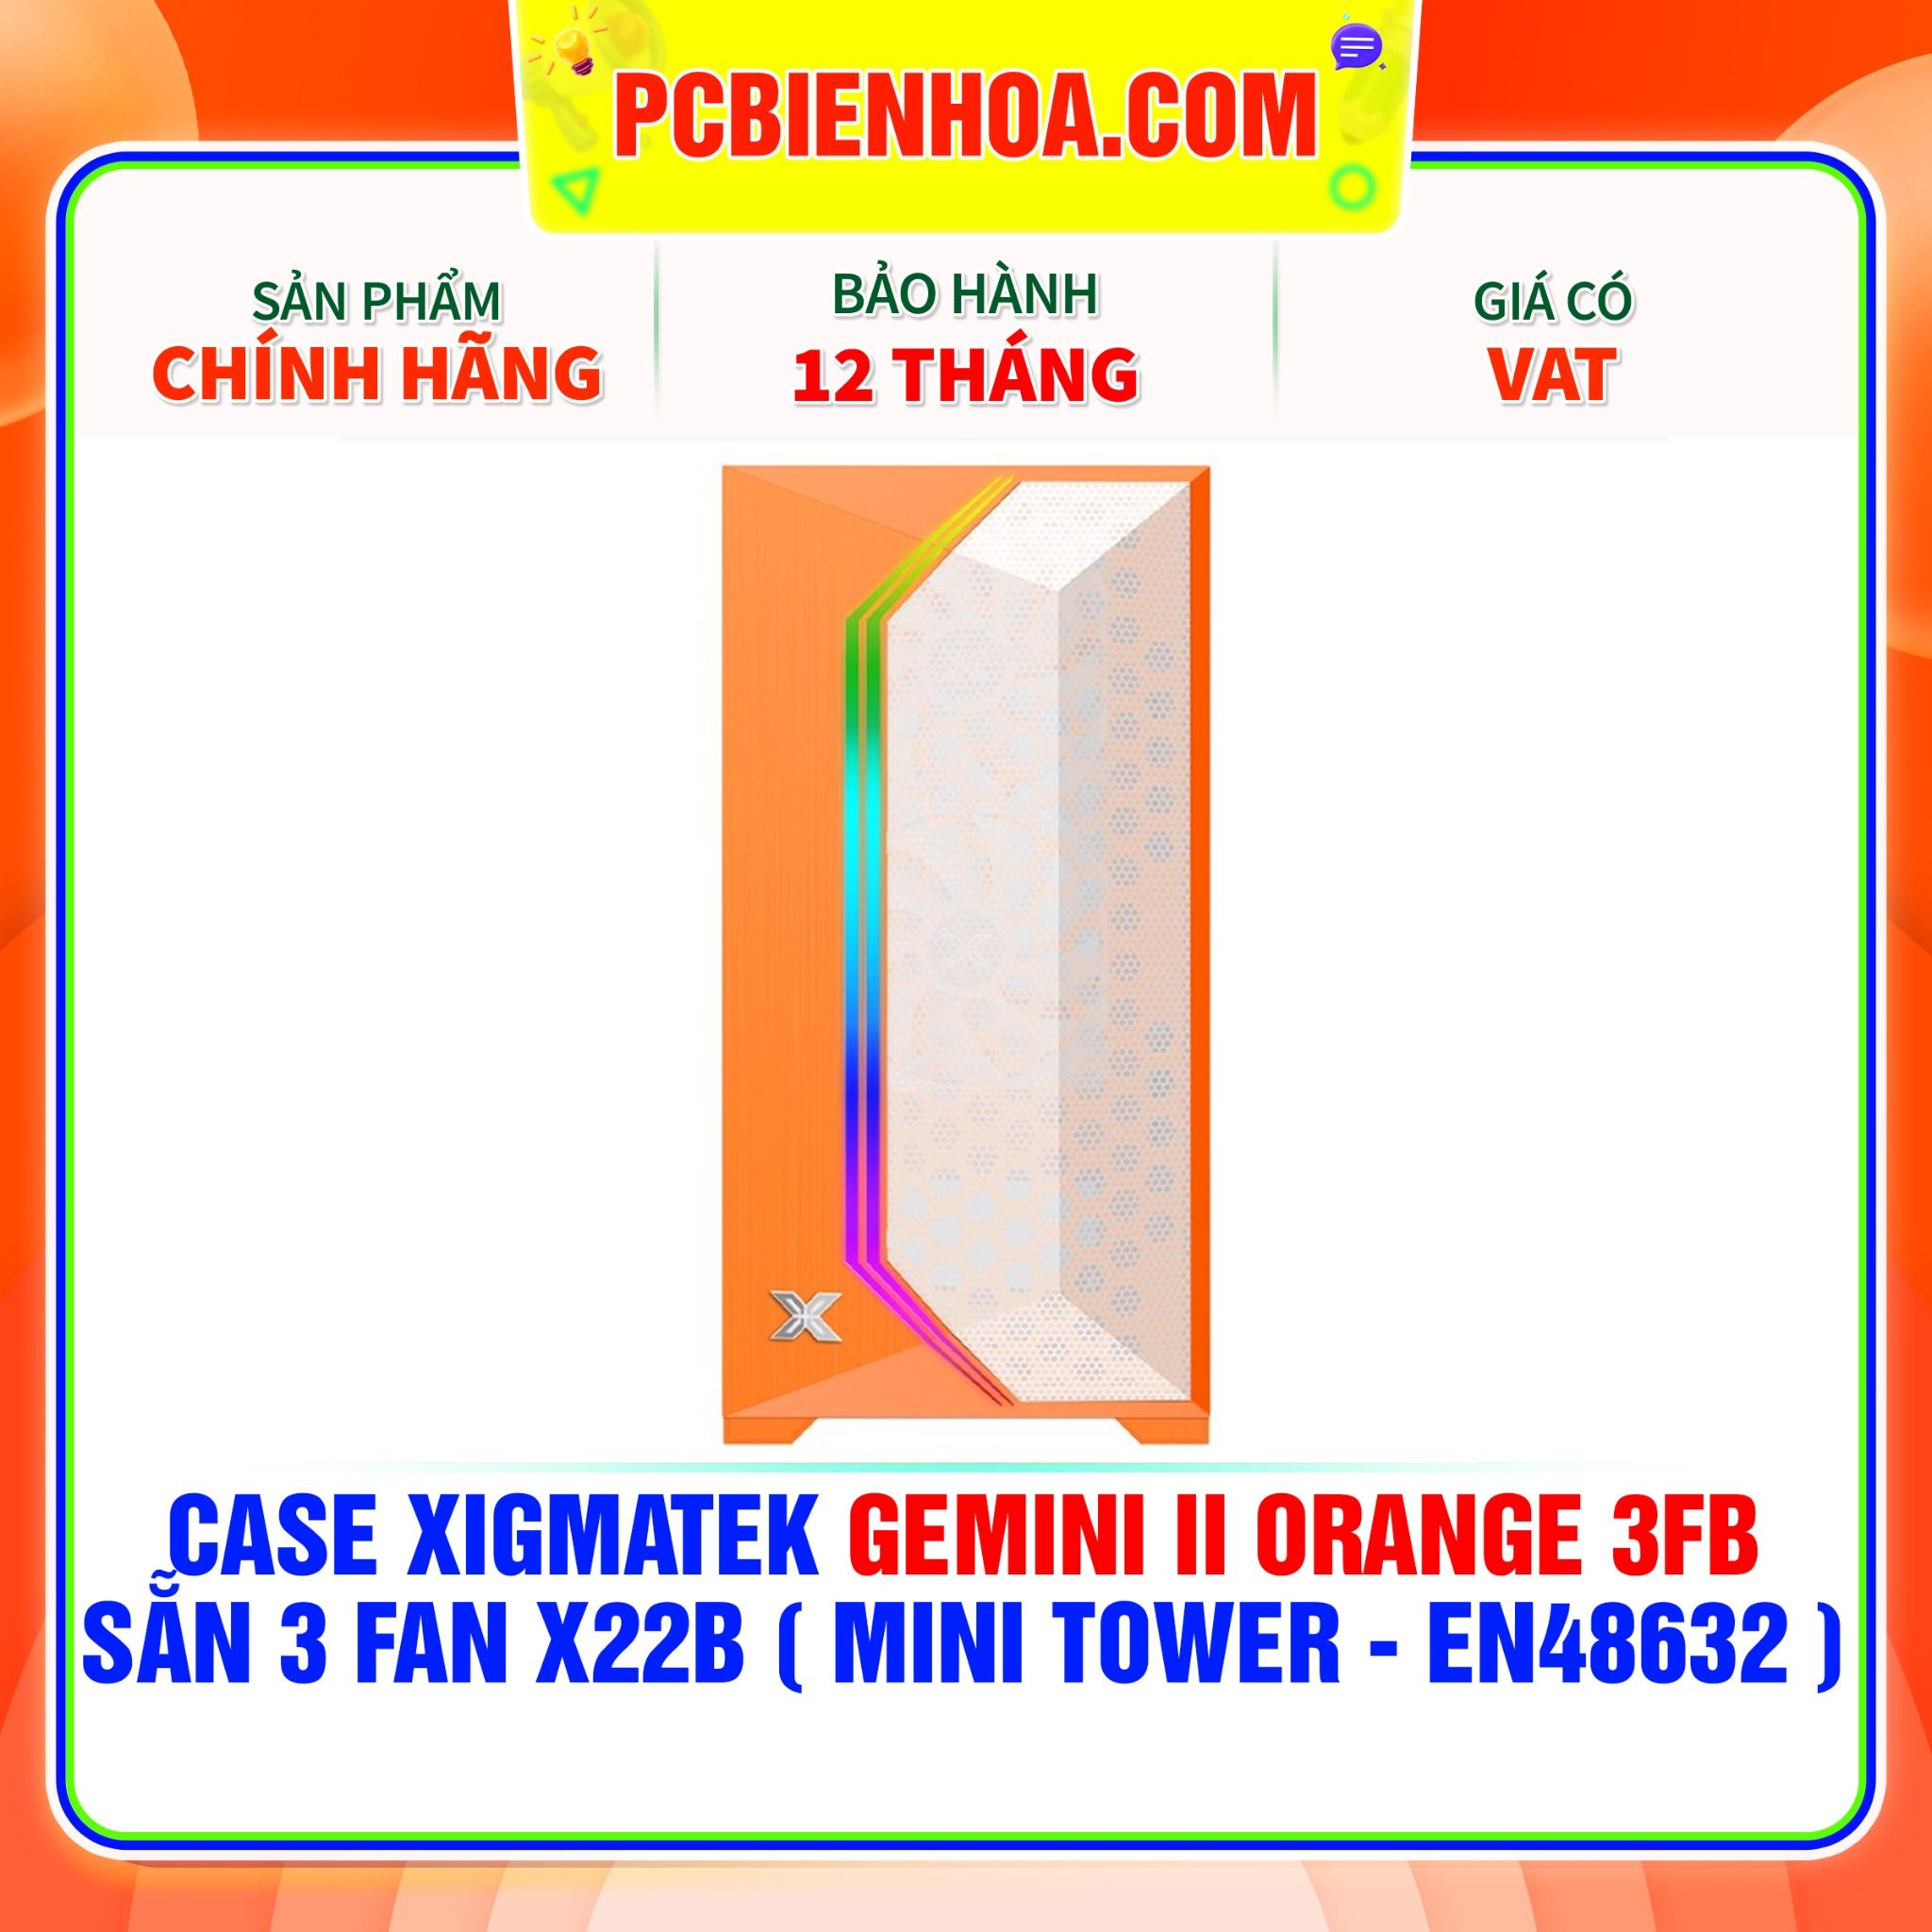  CASE XIGMATEK GEMINI II ORANGE 3FB - SẴN 3 FAN X22B ( MINI TOWER - EN48632 ) 